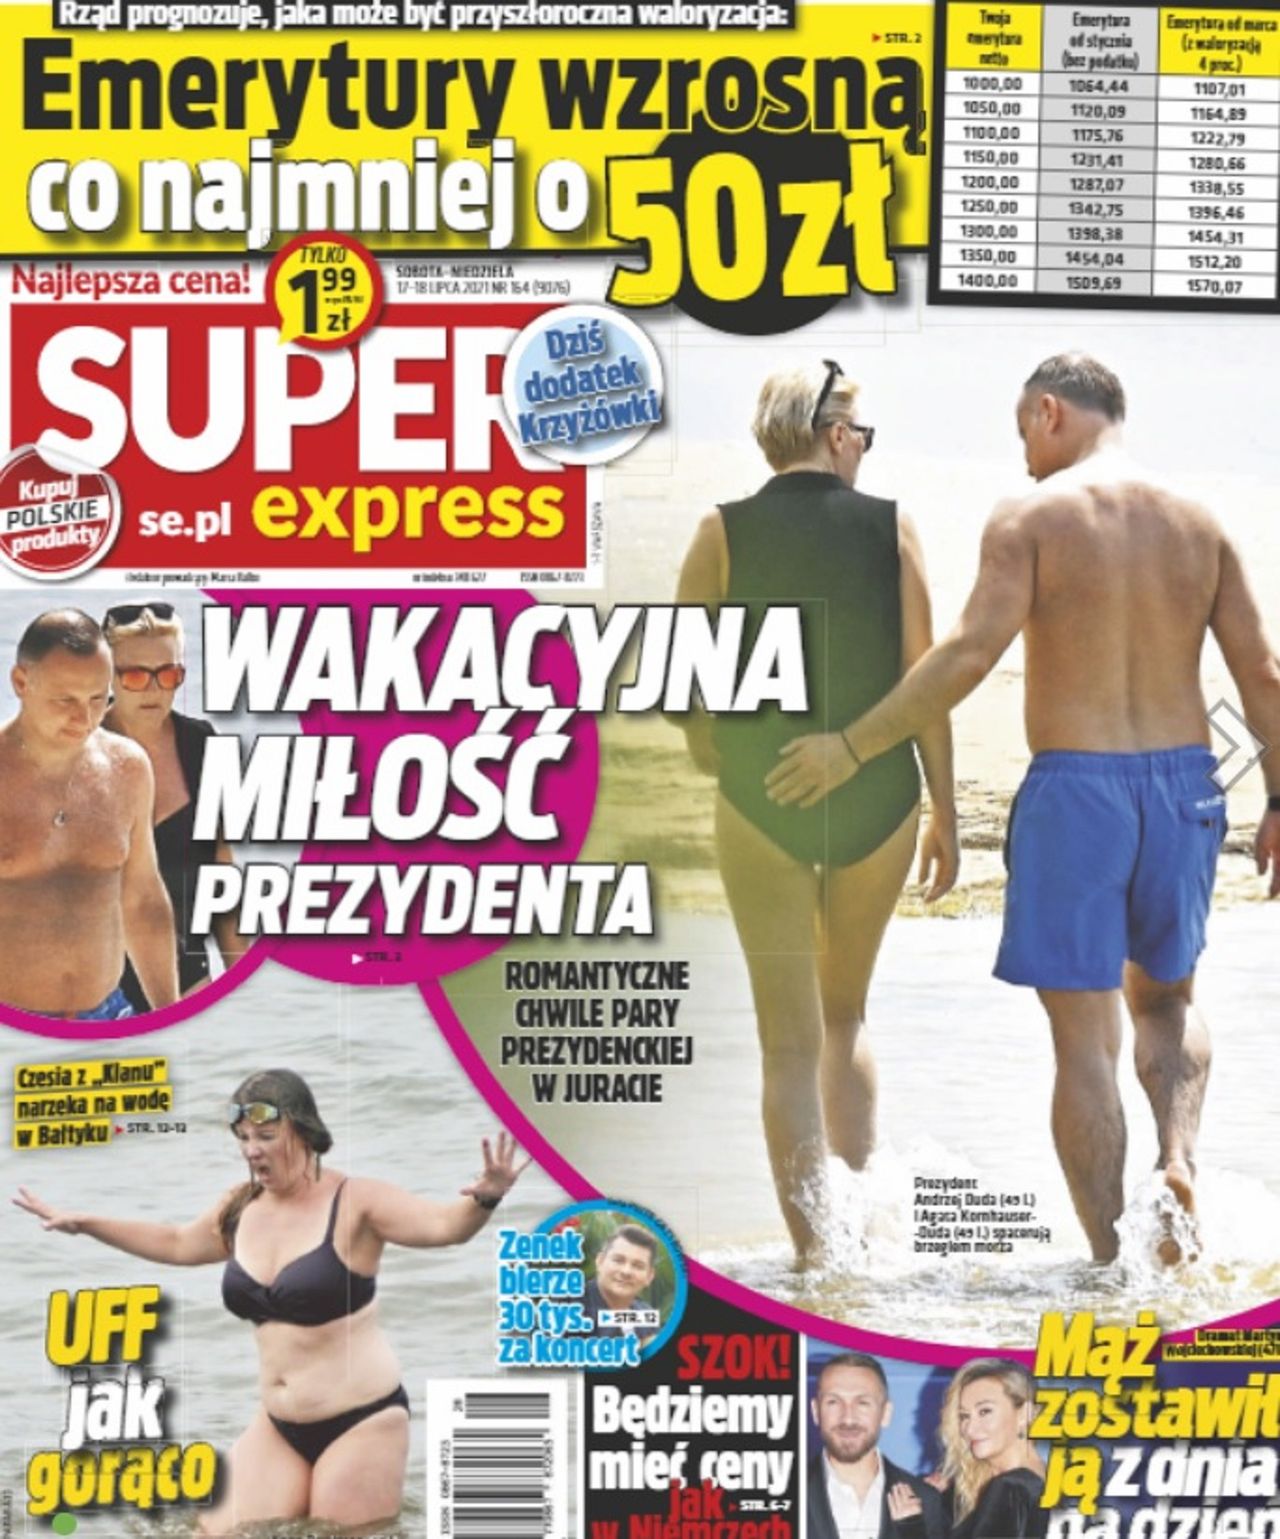 Andrzej Duda na wakacjach - screen okładki Super Express